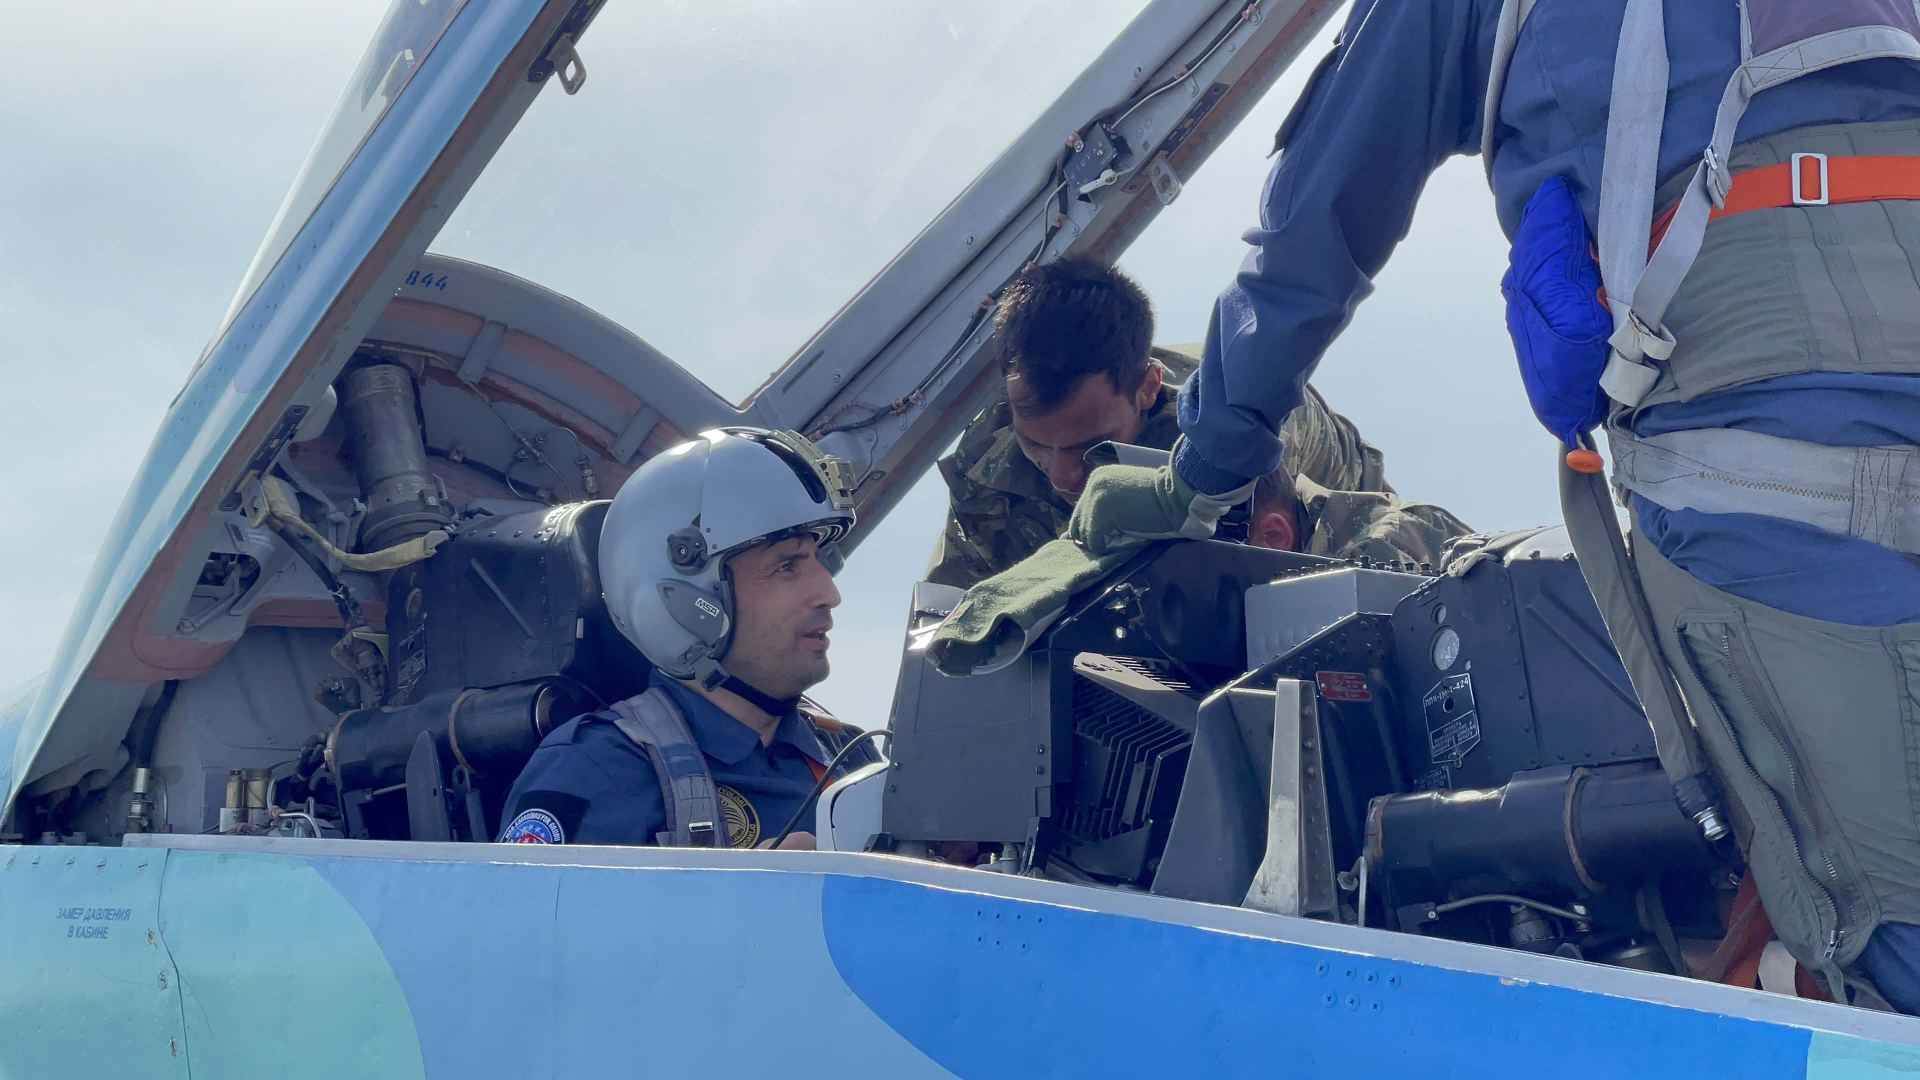 Сельджук Байрактар совершил полет над Баку на истребителе МиГ-29 (ФОТО/ВИДЕО)